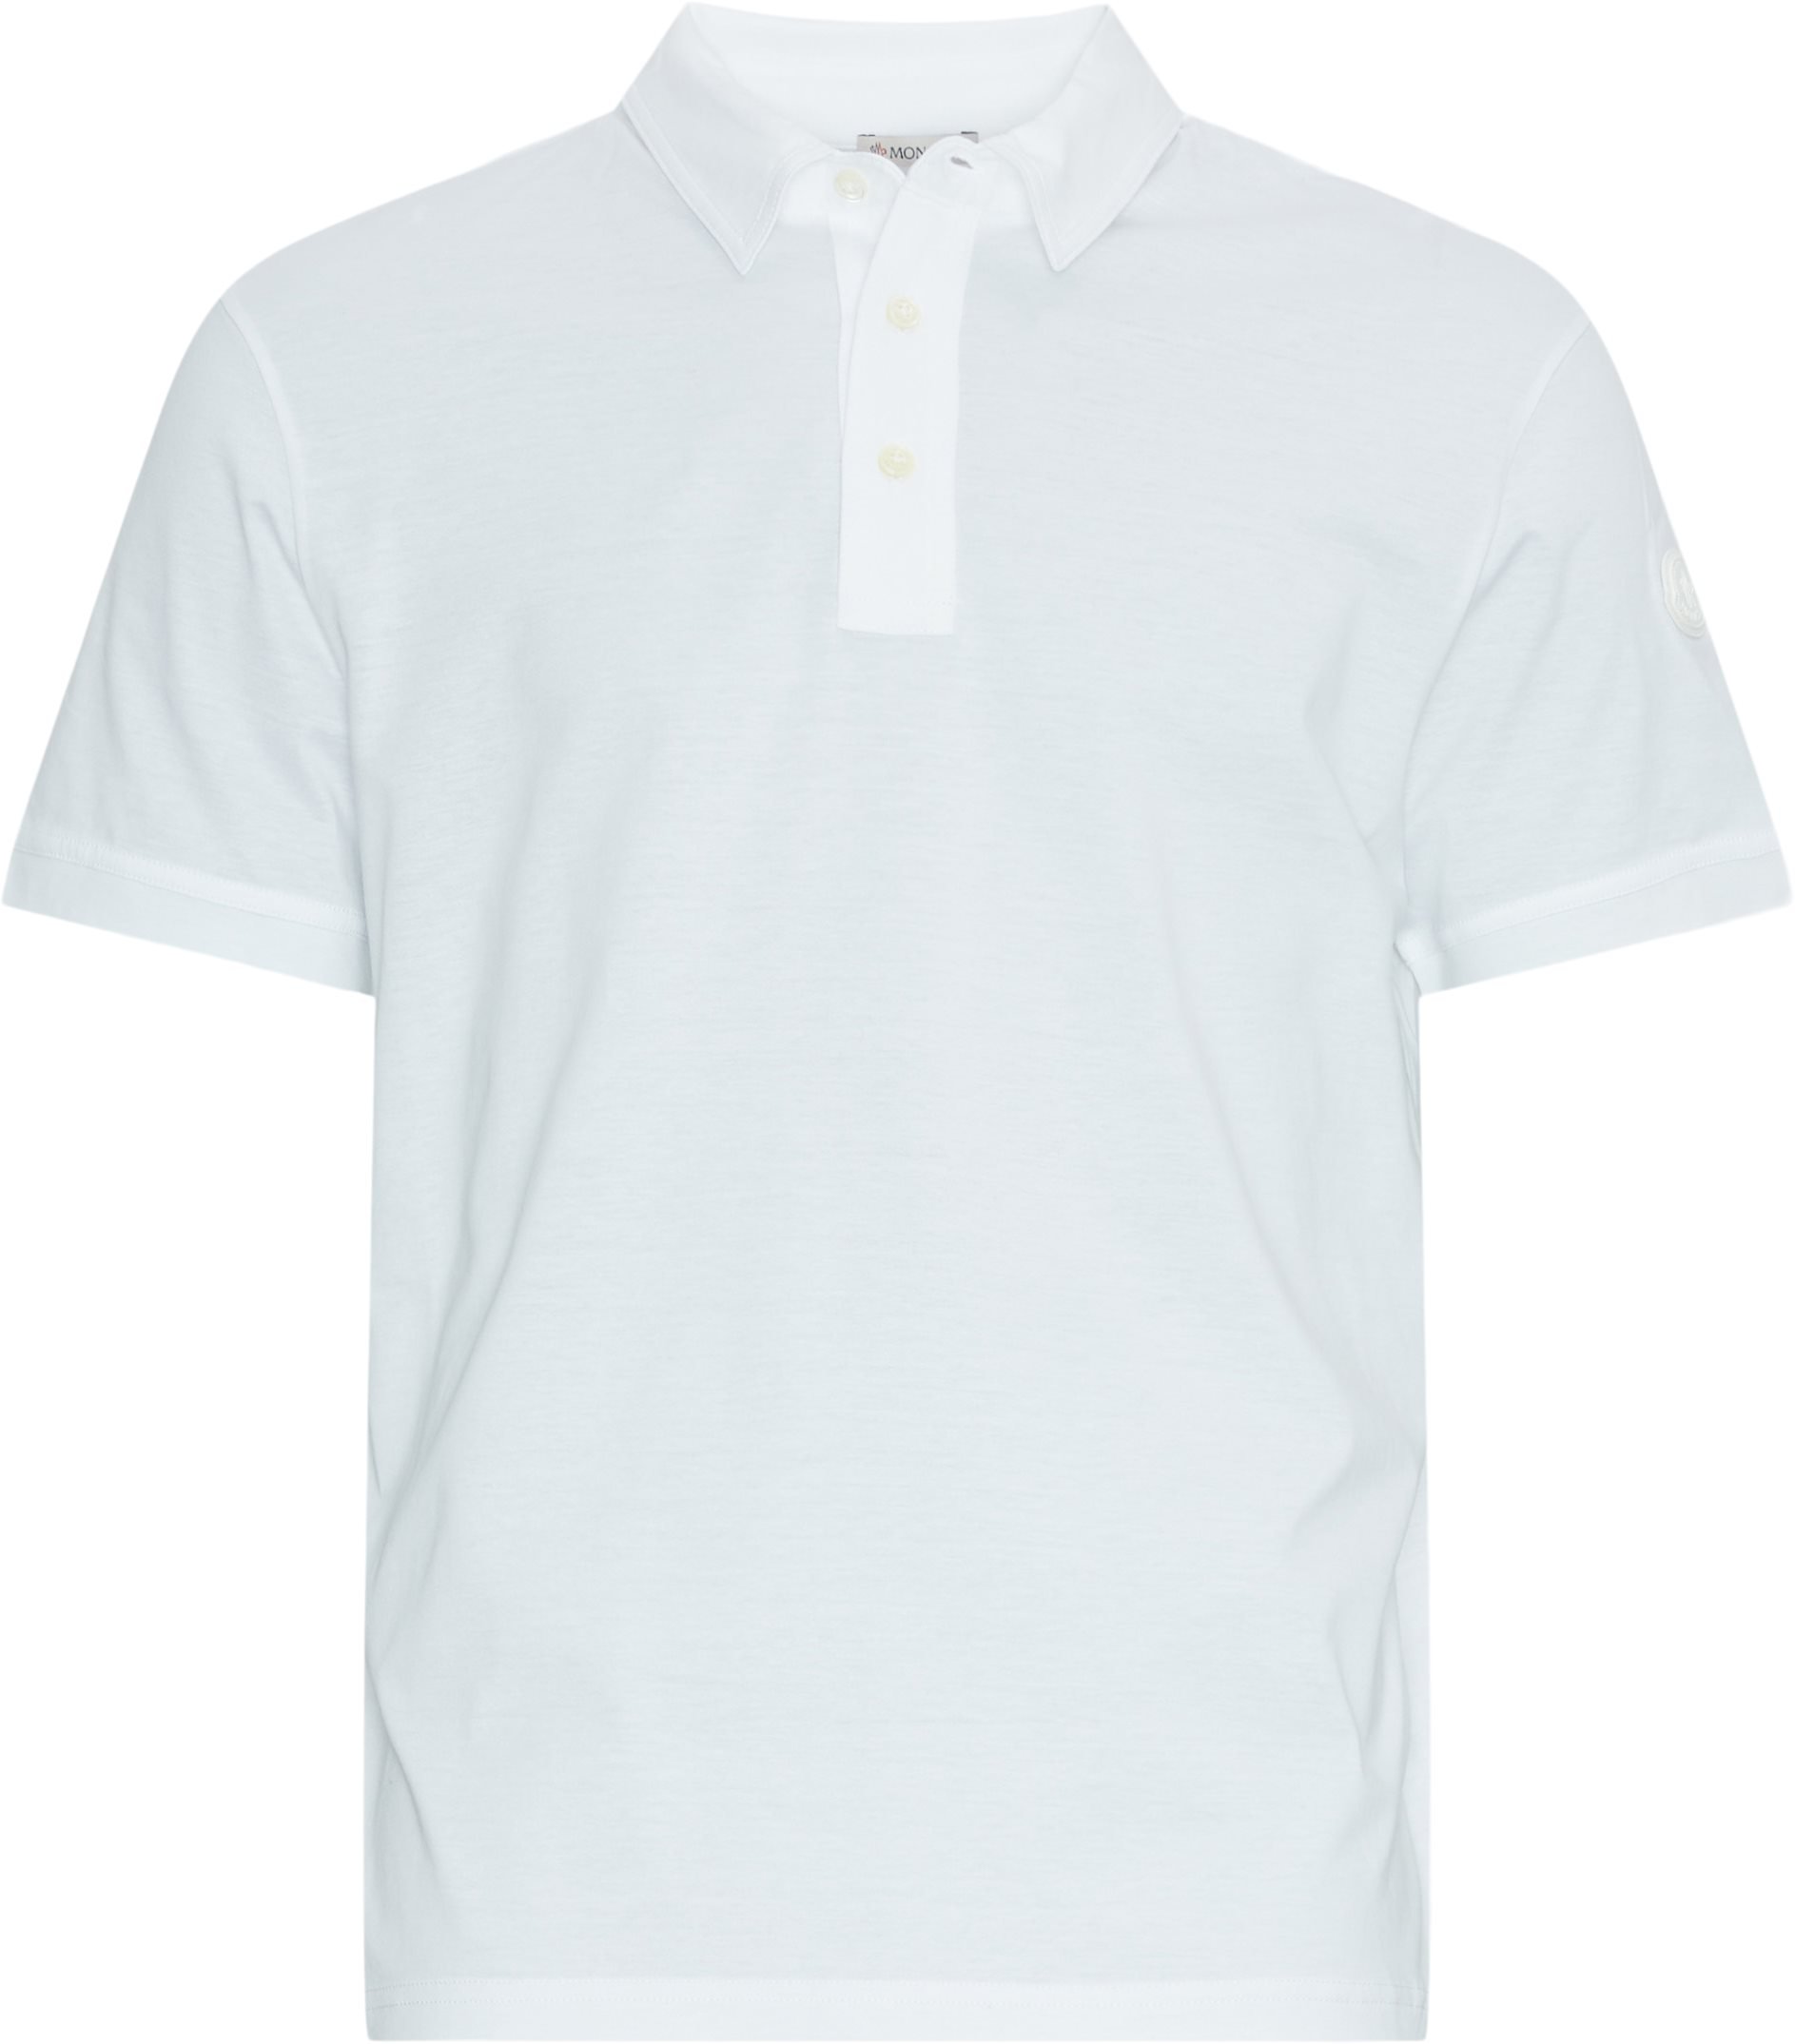 Moncler T-shirts 8A000 13 89AJN White